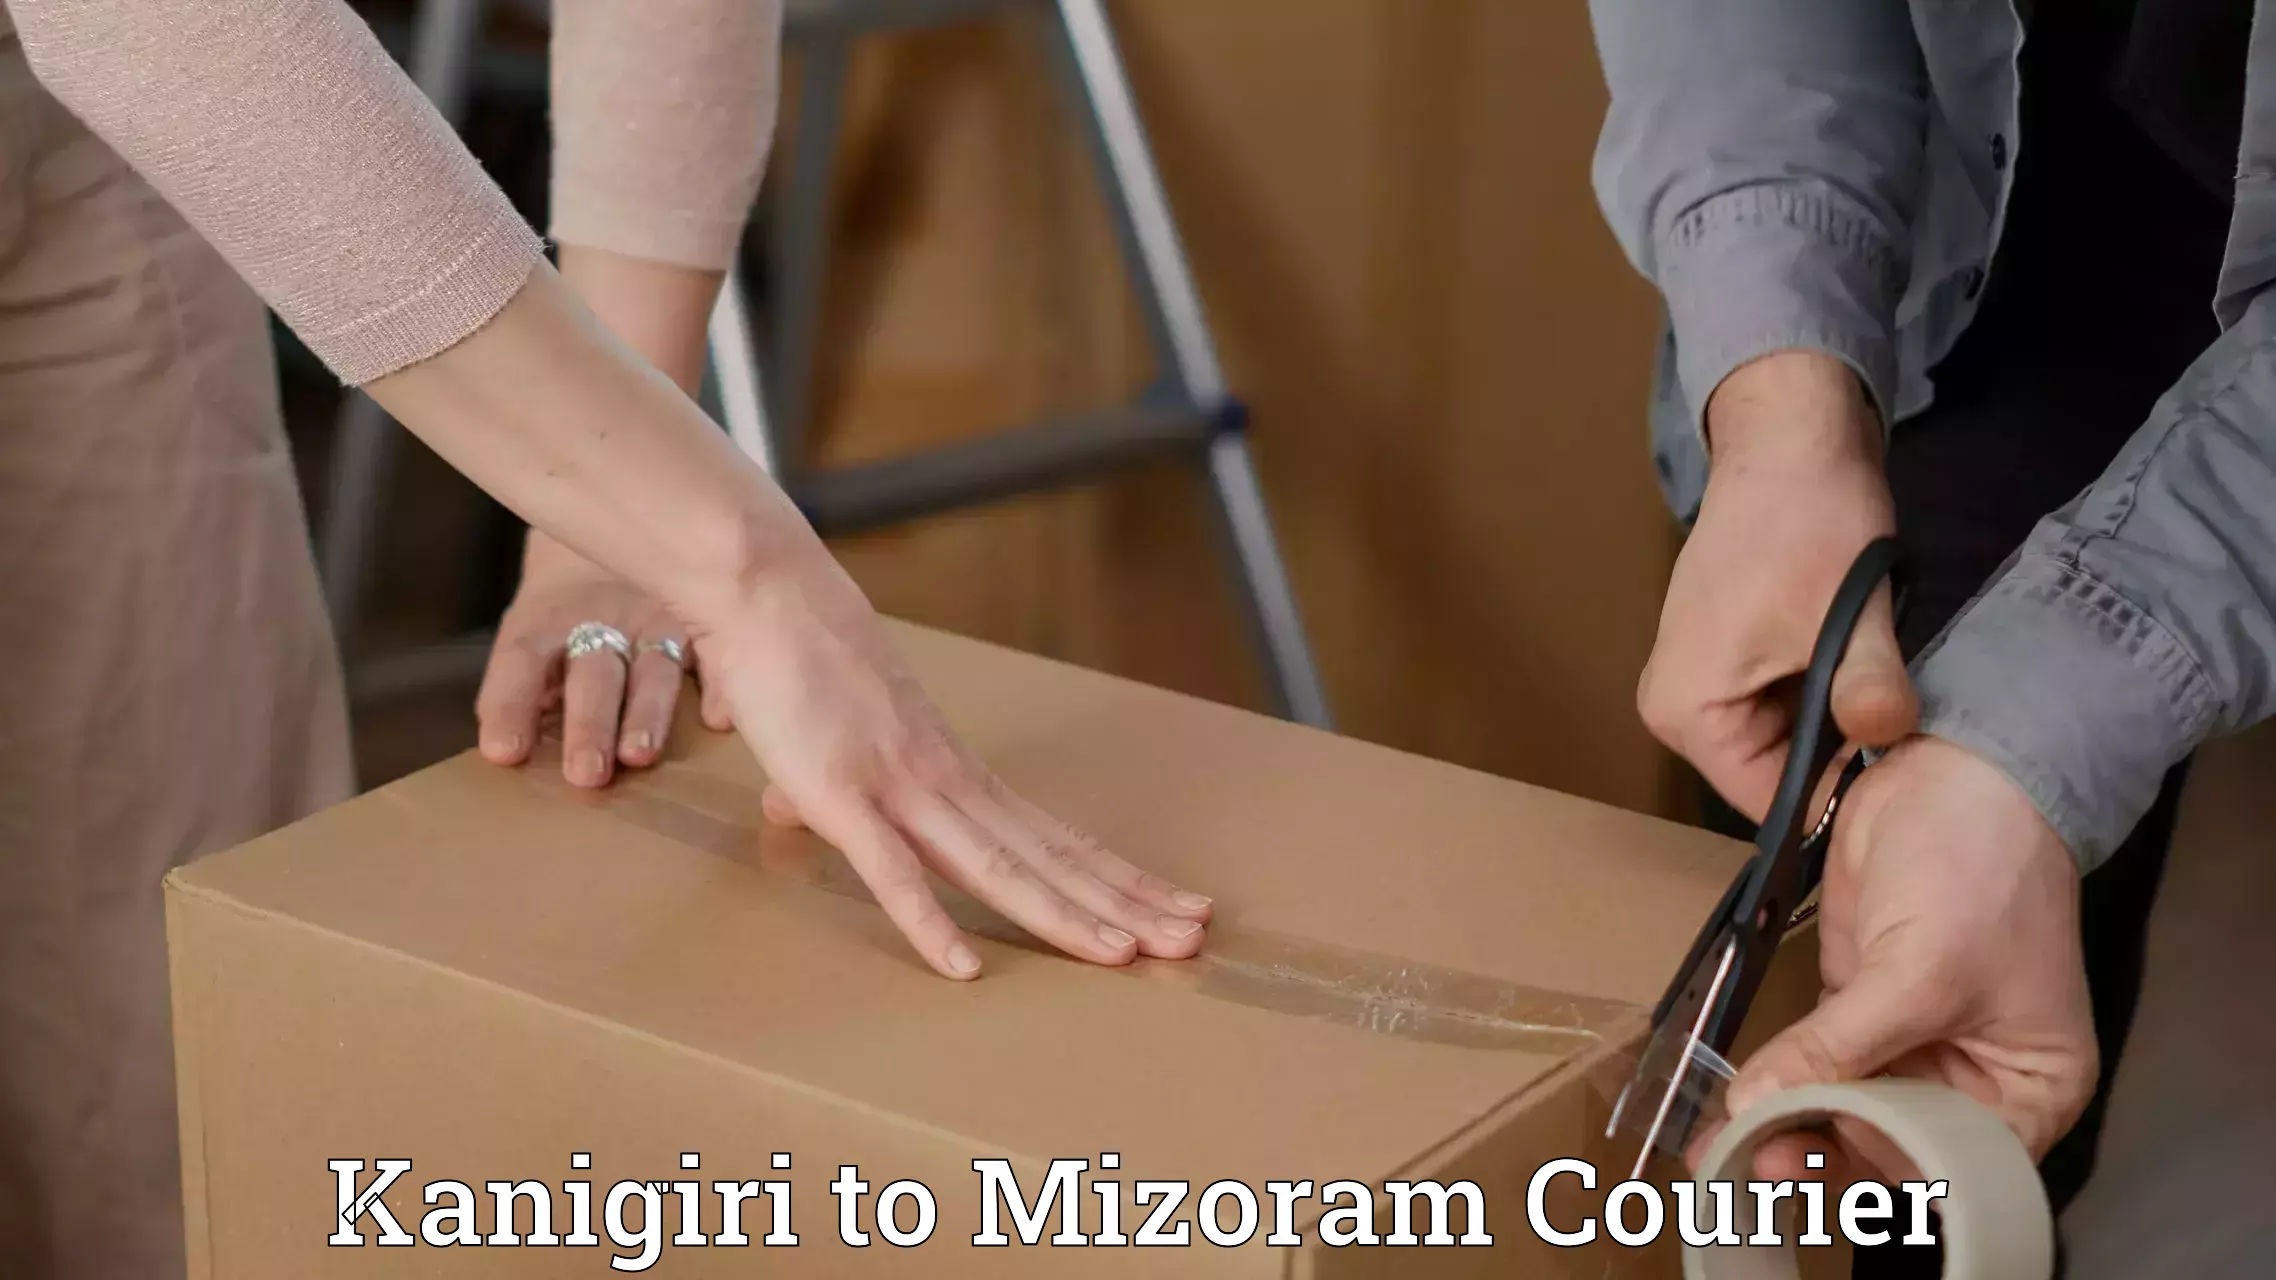 Professional courier handling Kanigiri to Mizoram